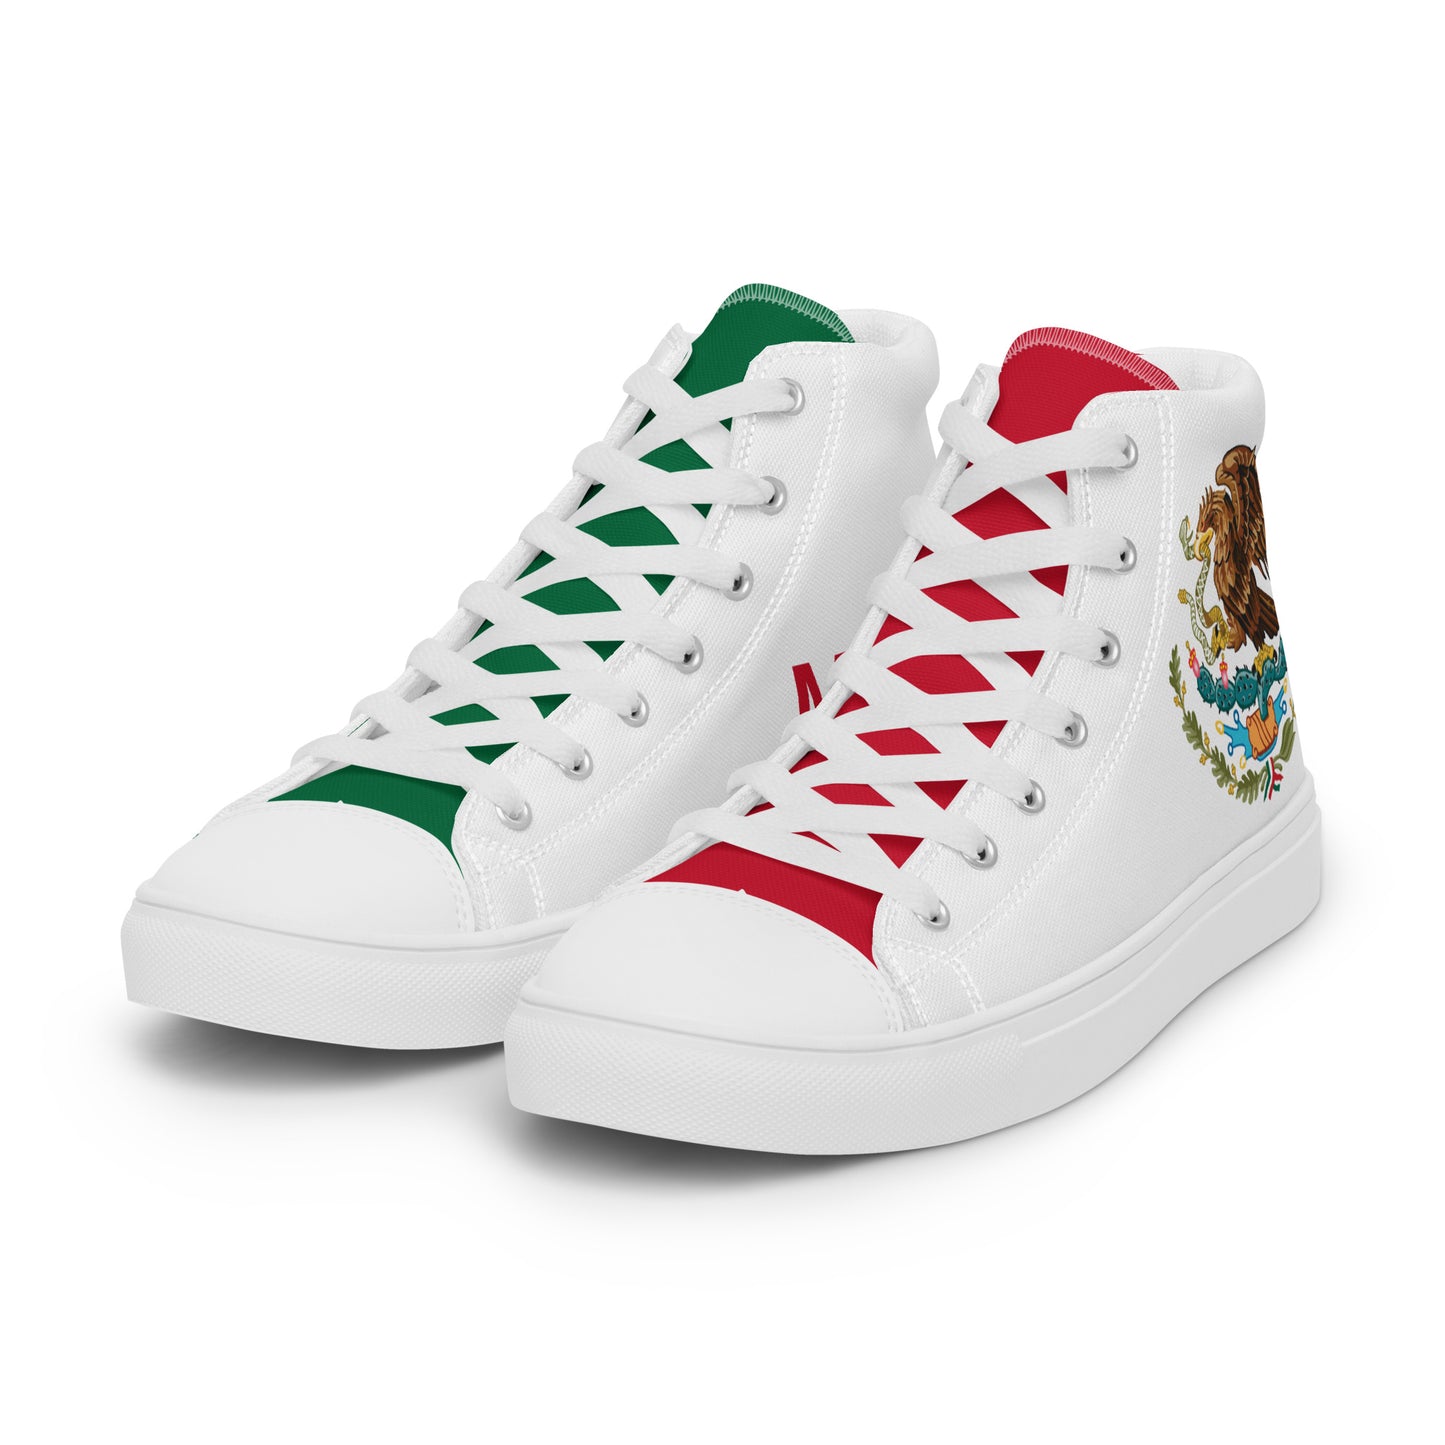 México - Men - White - High top shoes